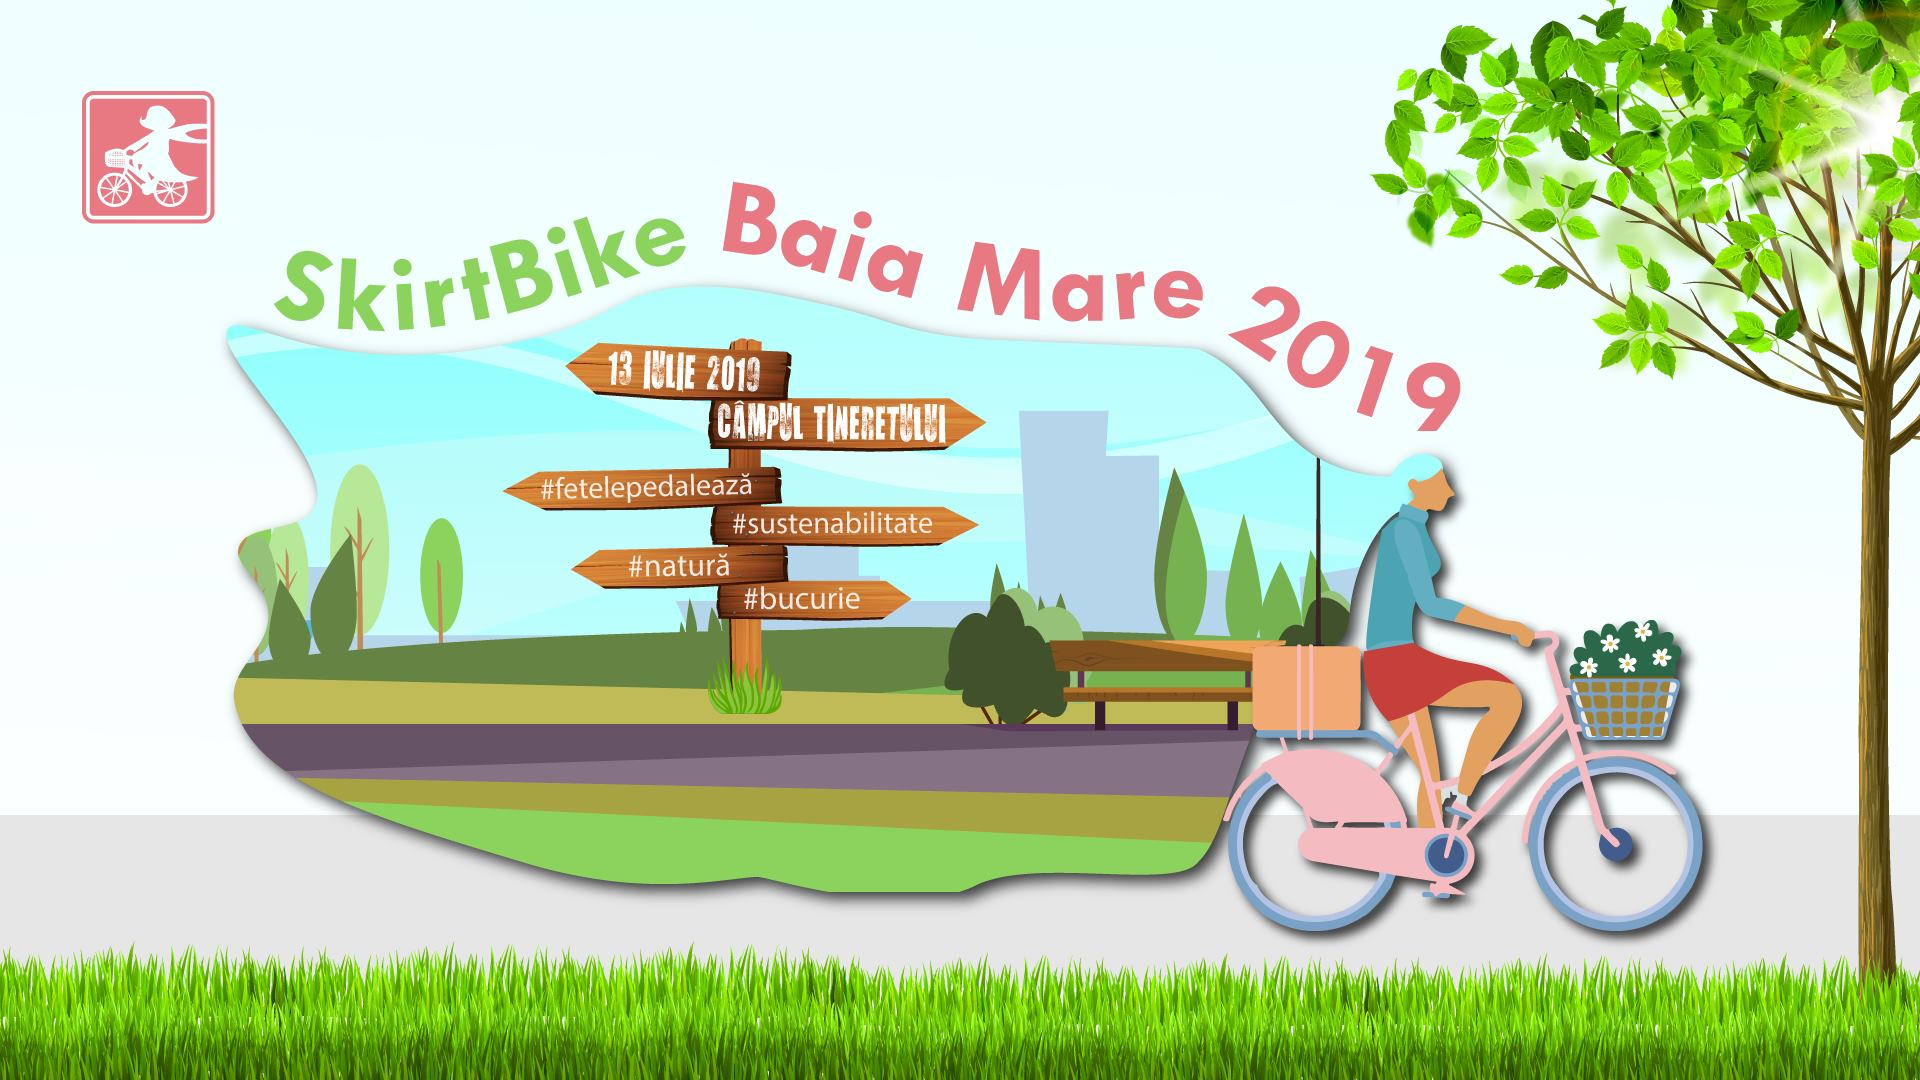 SkirtBike Baia Mare 2019